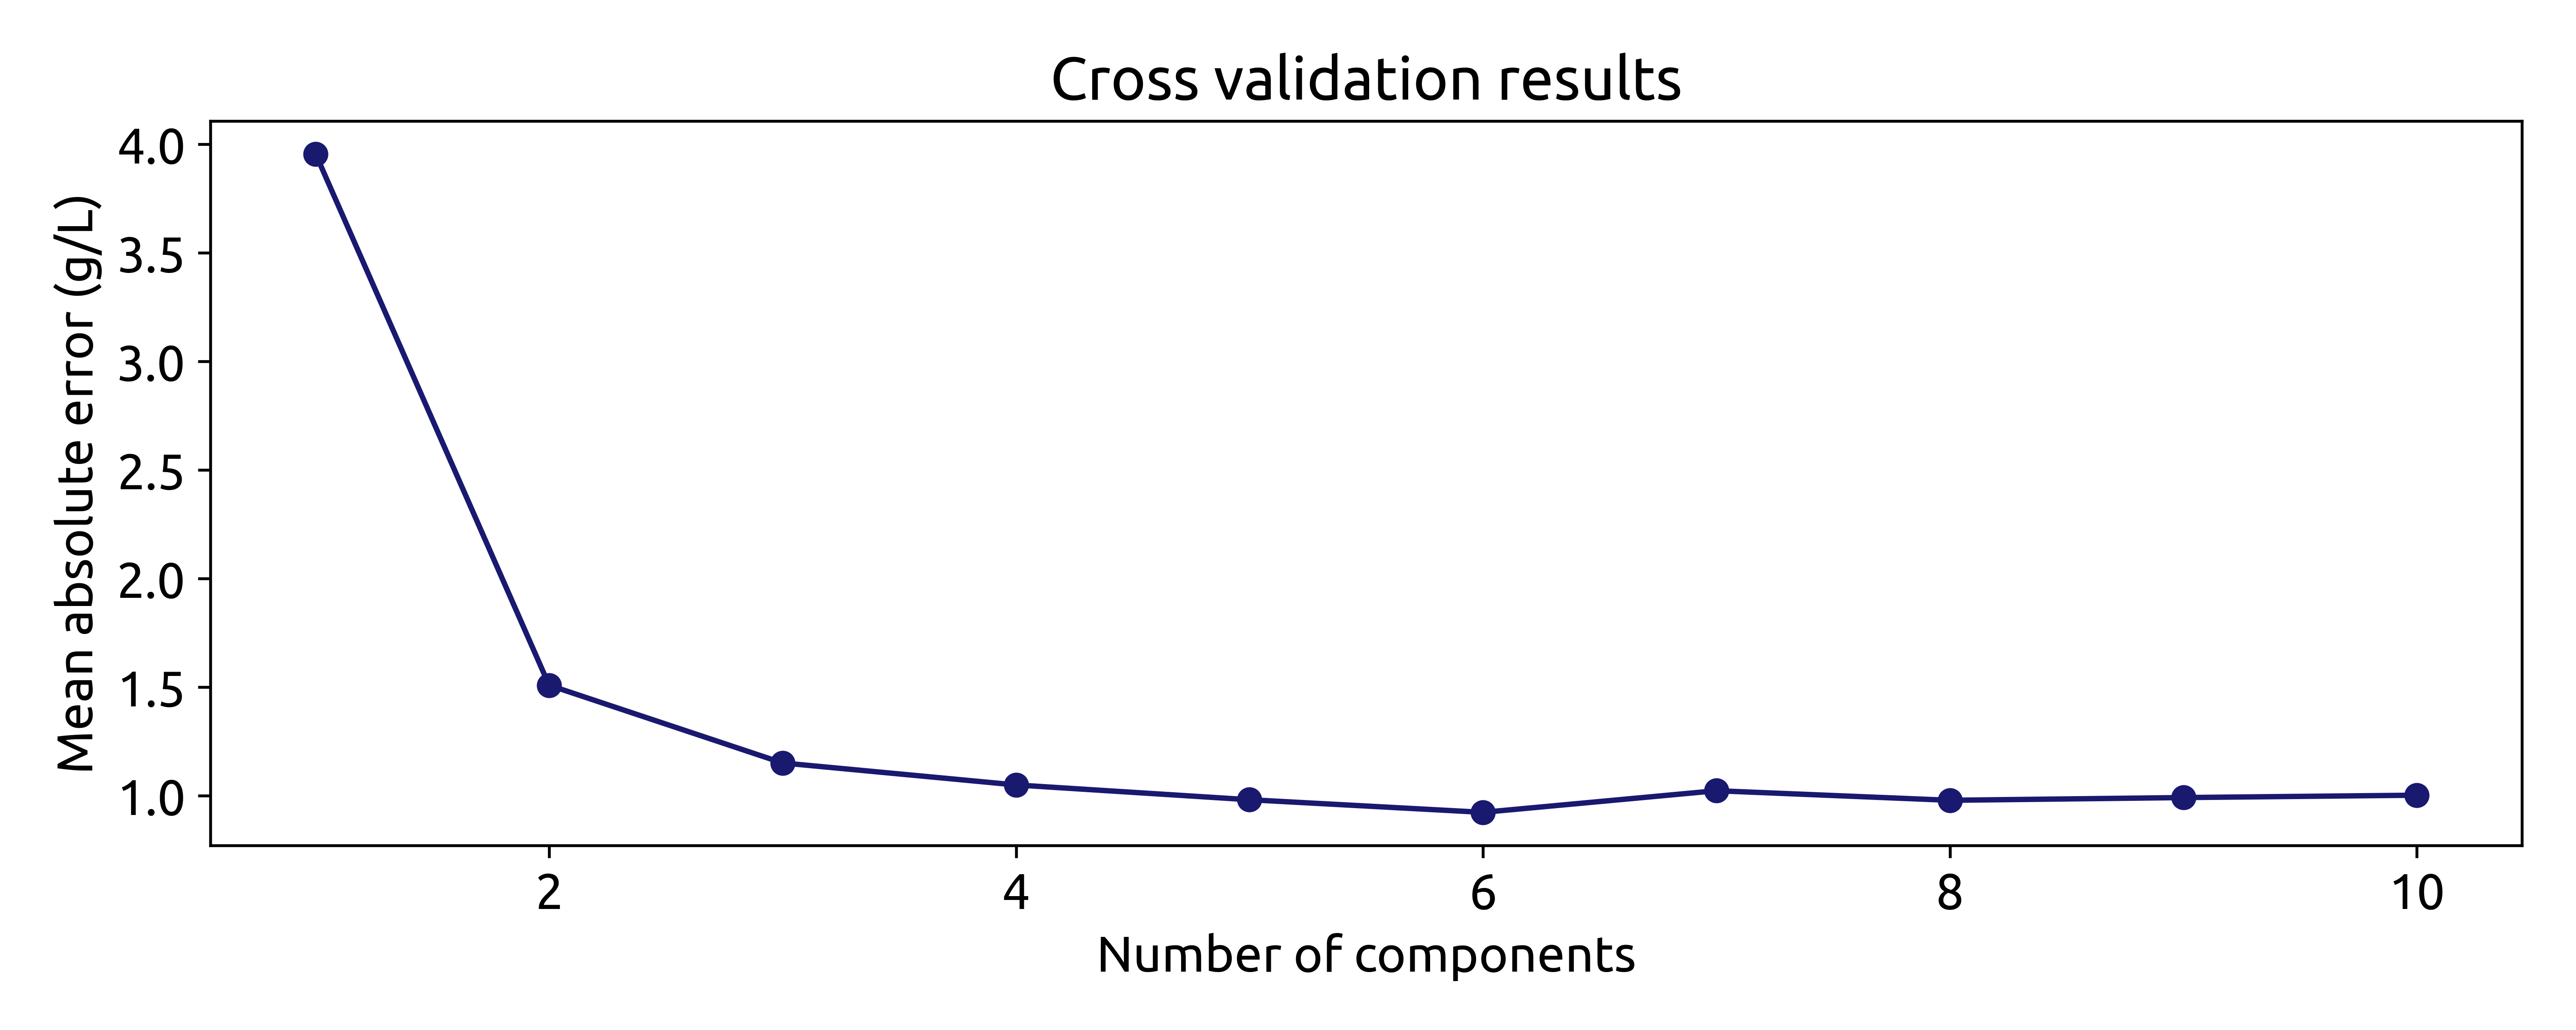 Cross validation results